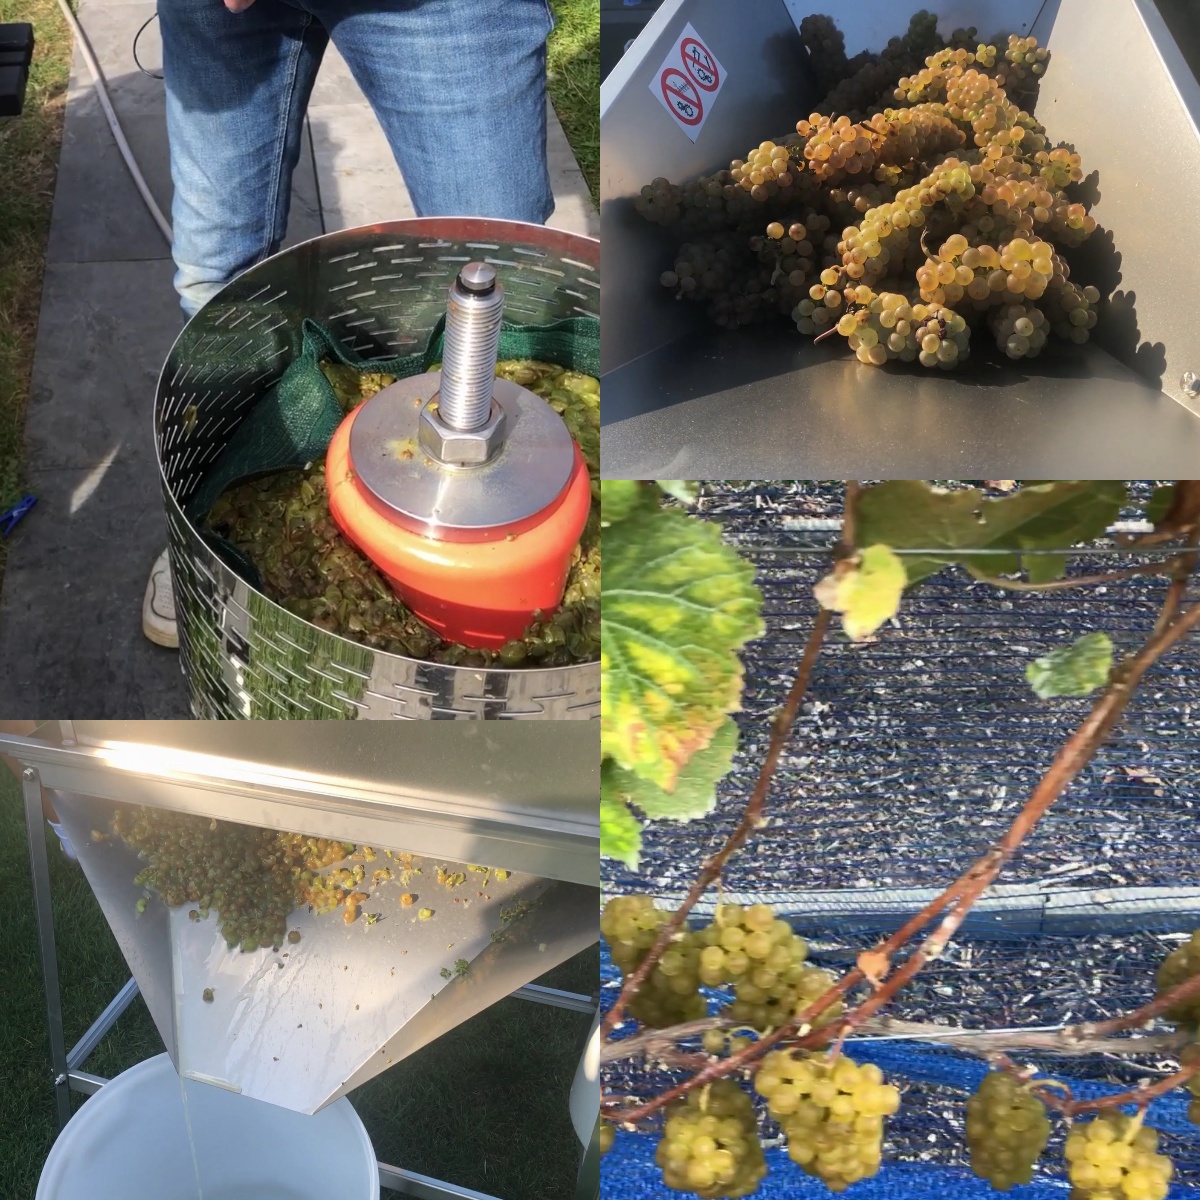 orkest Gepland Nest Zelf witte wijn maken van druiven - Het proces uitgelegd in 12 stappen -  Wijnbouwweetjes